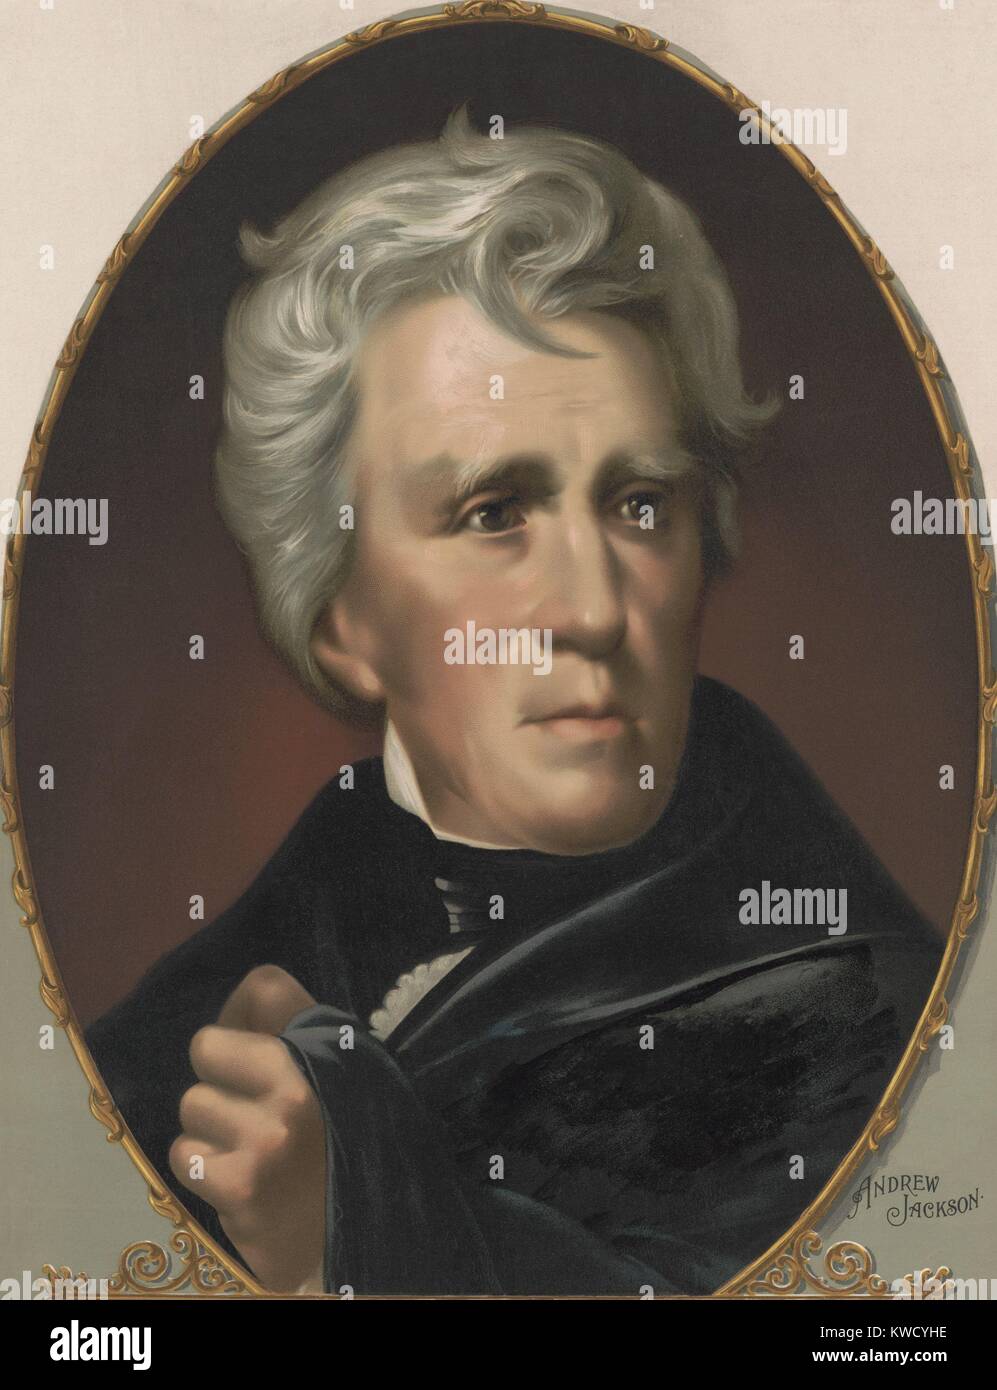 Le président Andrew Jackson, ovale chromolithographie imprimée en 1896 (BSLOC 2017 6 15) Banque D'Images